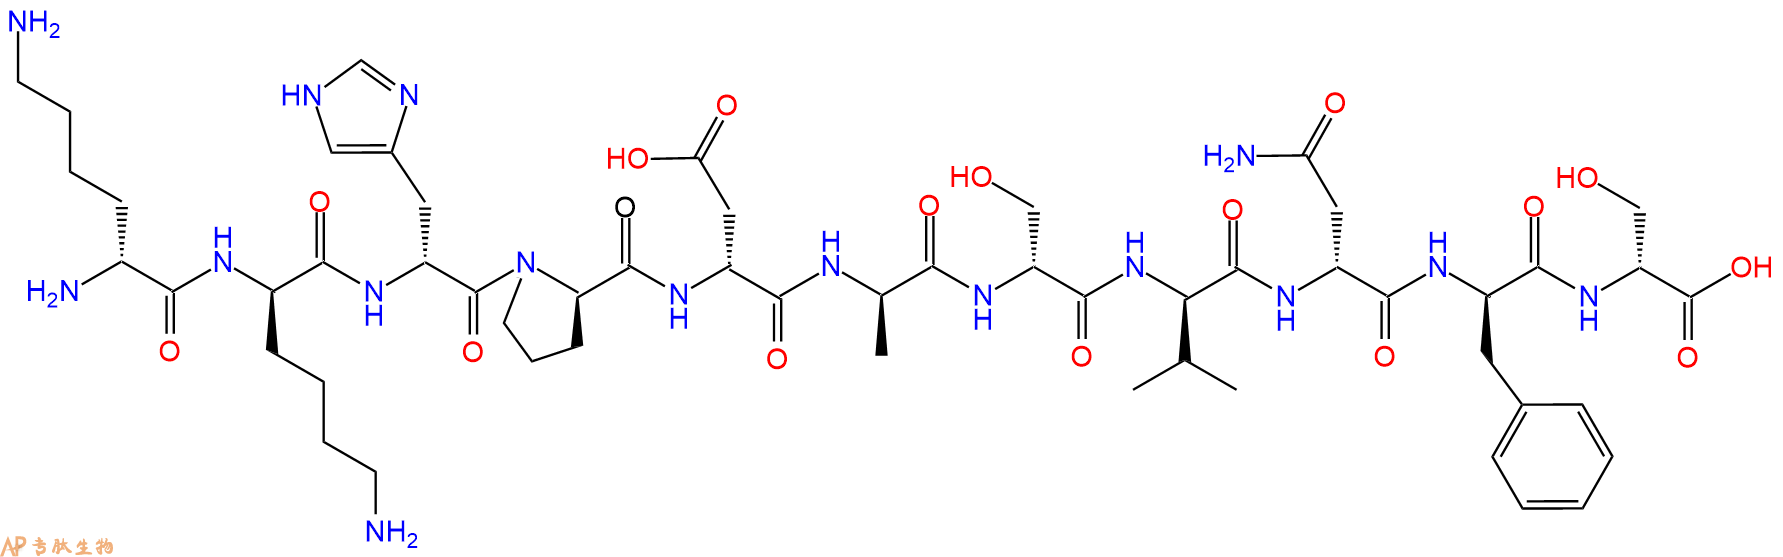 专肽生物产品H2N-DLys-DLys-DHis-DPro-DAsp-DAla-DSer-DVal-DAsn-D